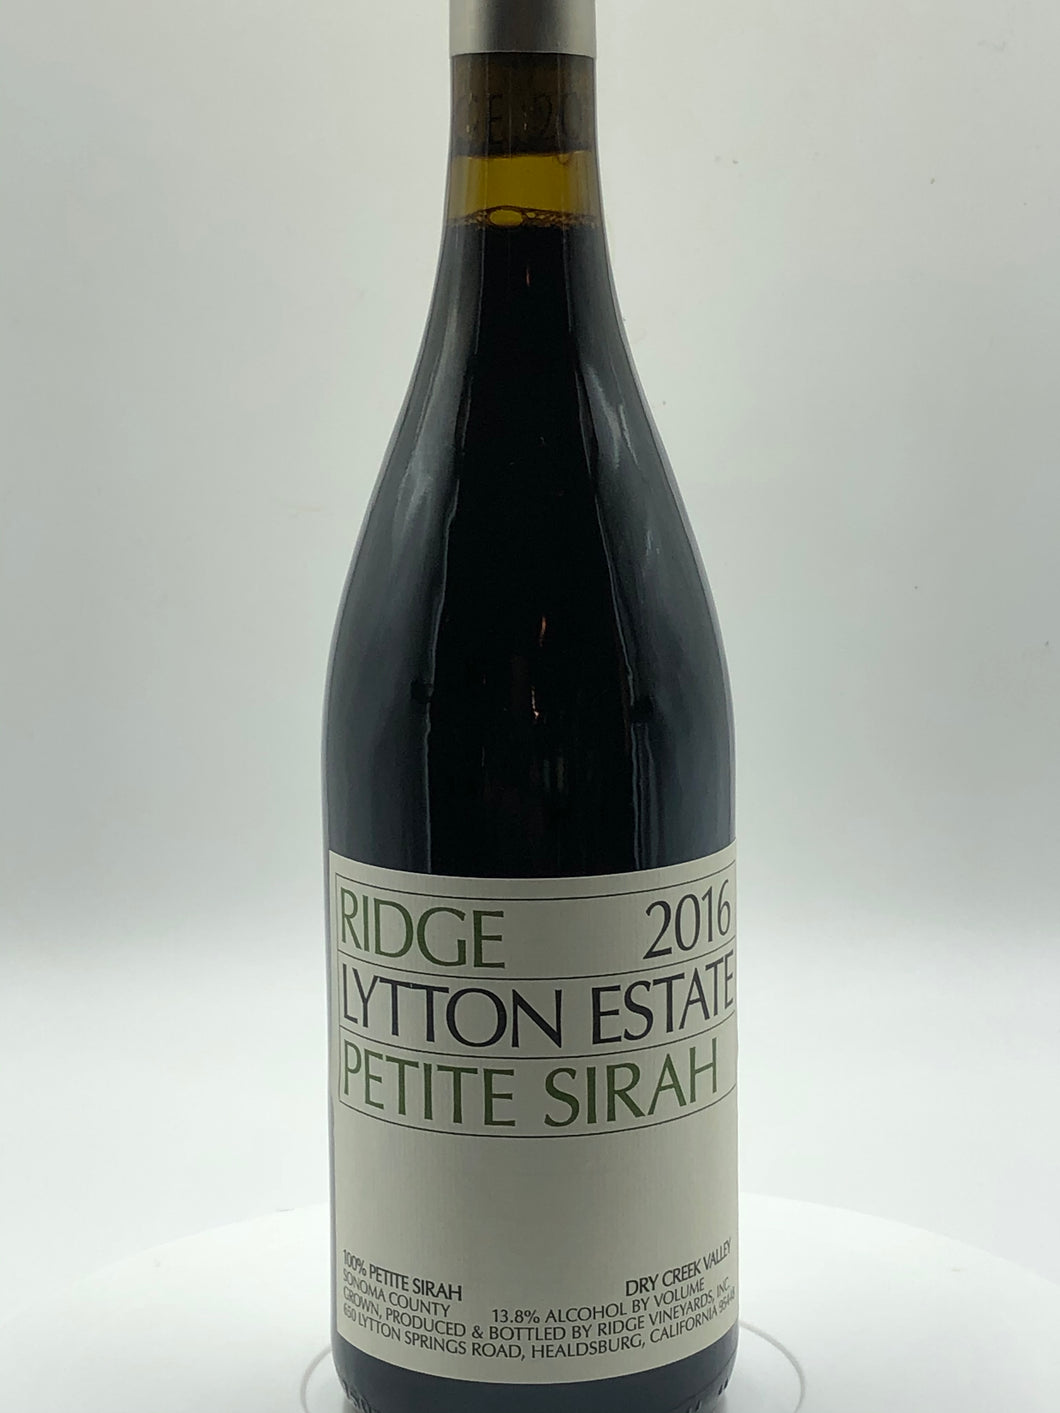 Ridge Vineyards Petite Sirah “Lytton Estate”